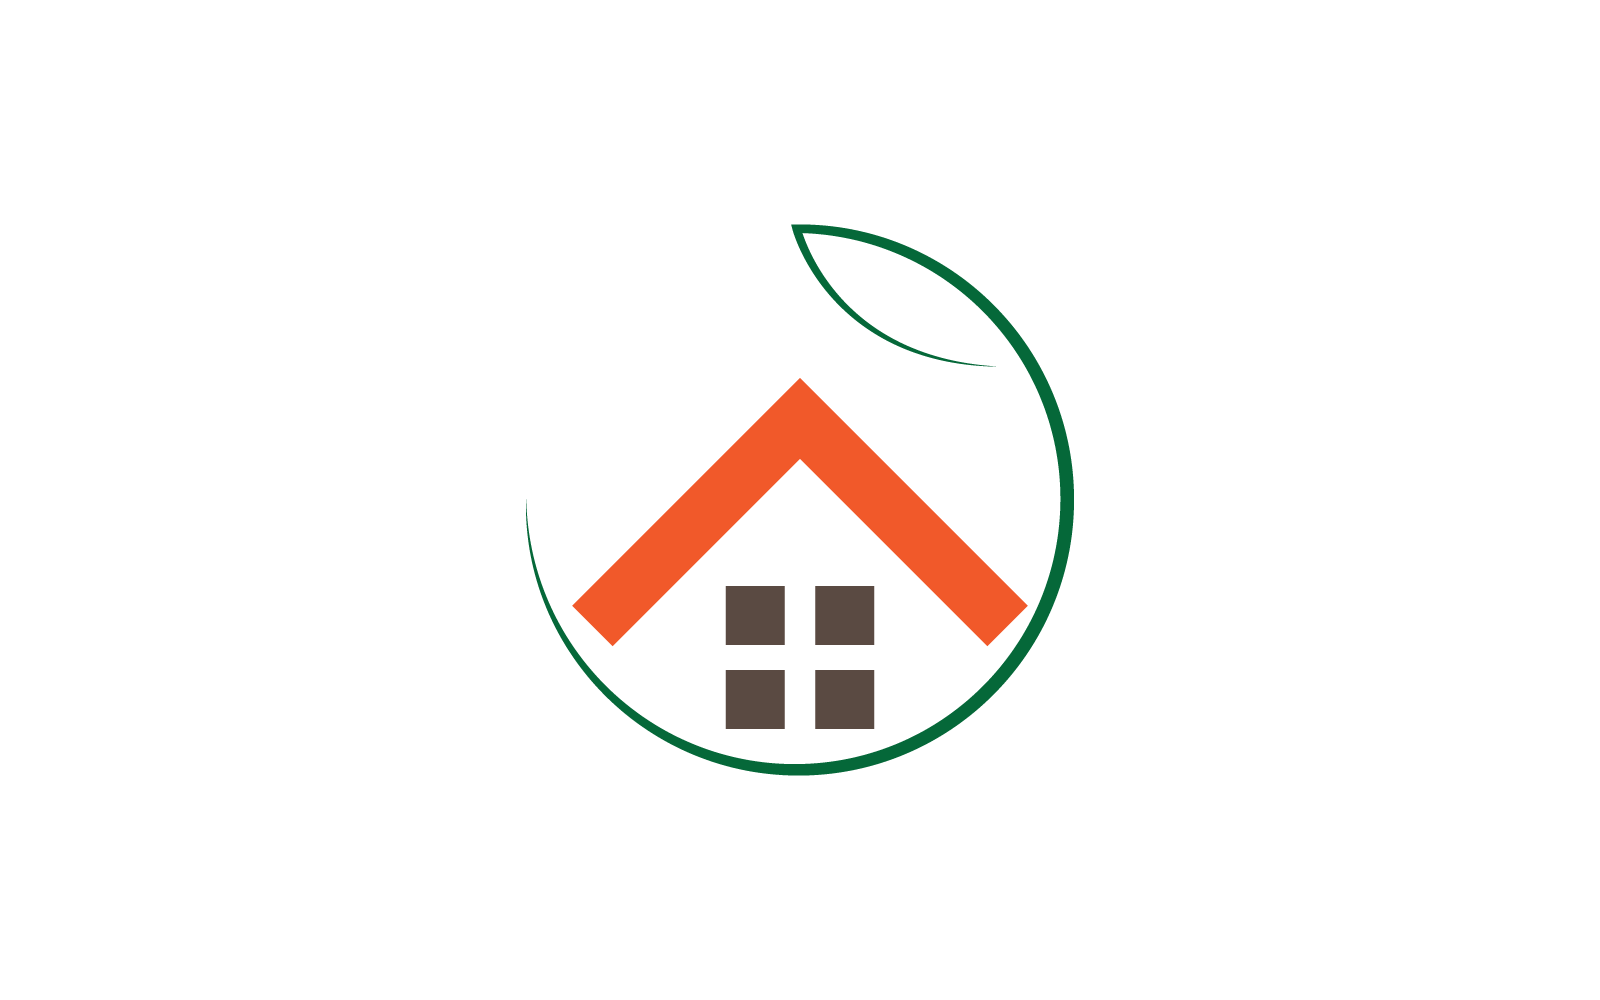 Green House logo vector template